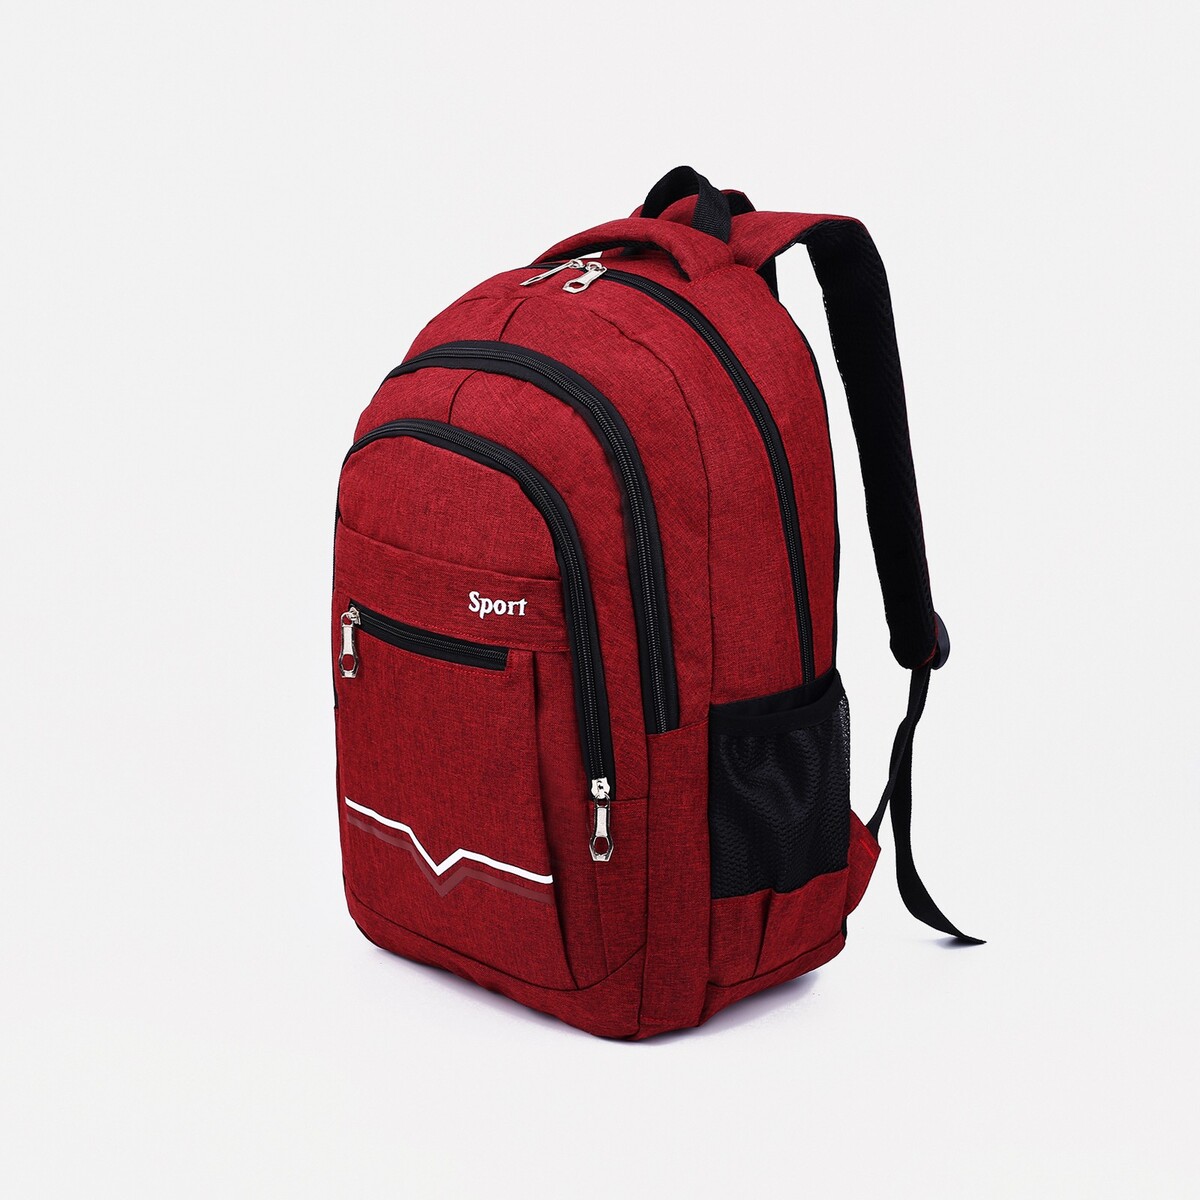 Рюкзак на молнии, 2 наружных кармана, цвет бордовый pixel bag рюкзак с led дисплеем pixel max red line бордовый